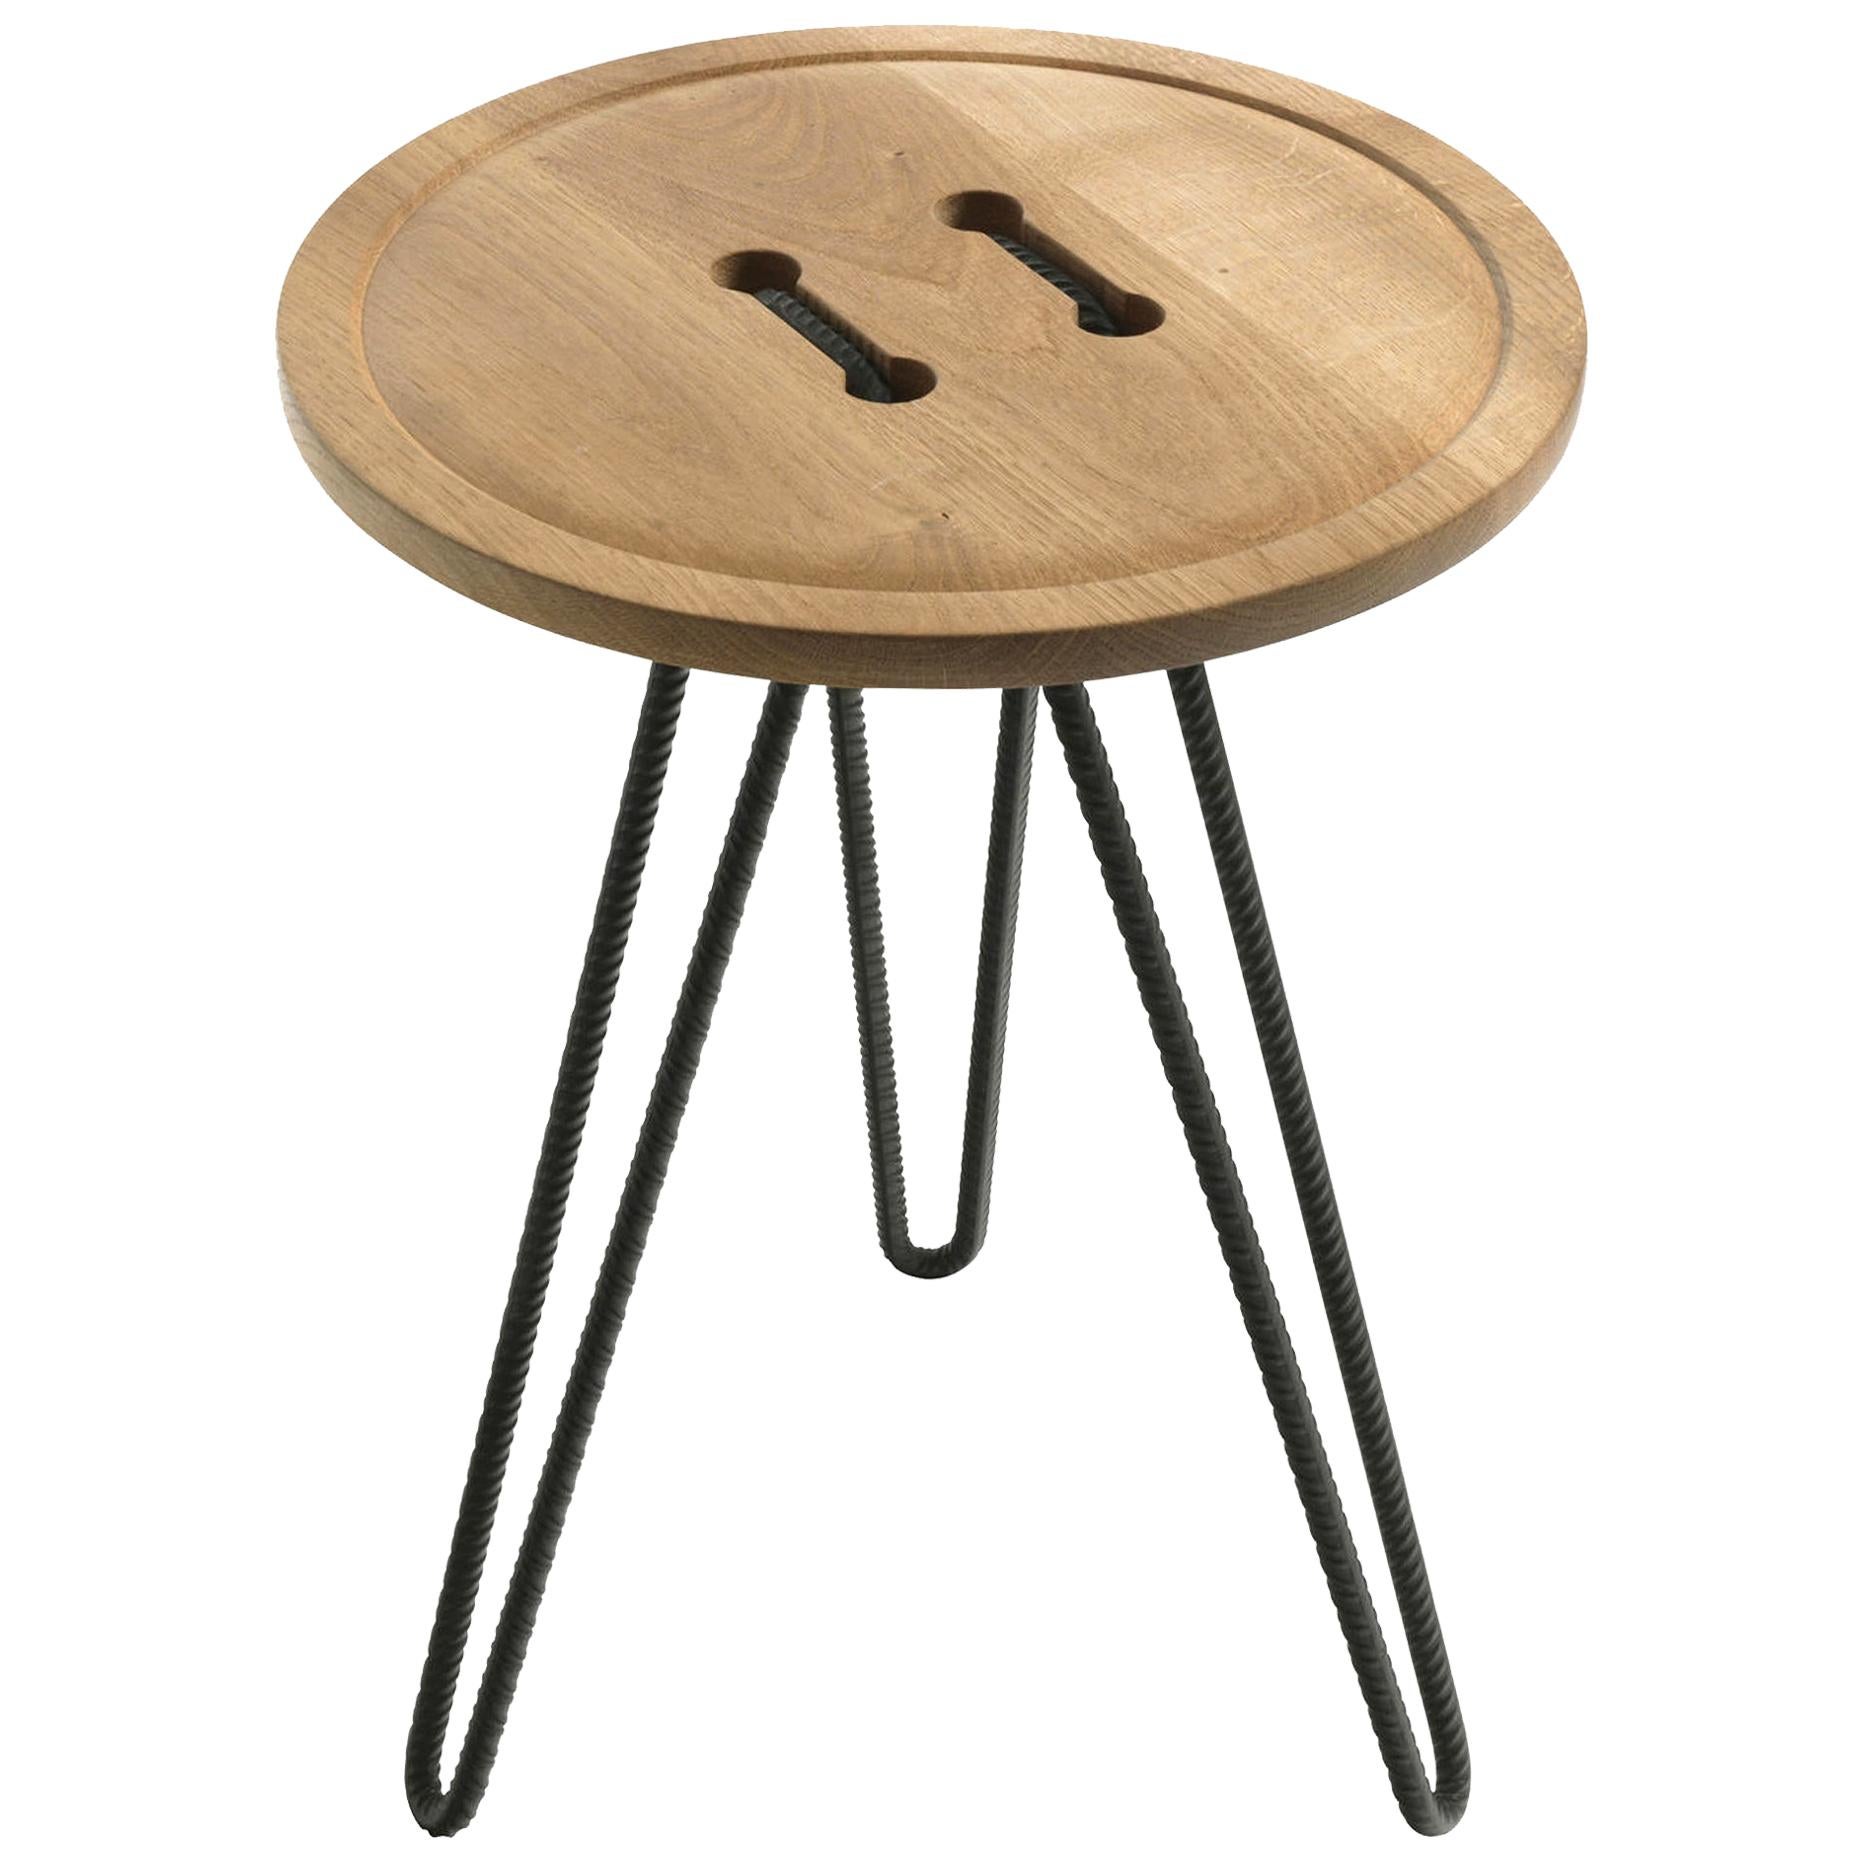 Button Wood Table, Designed by Luca Martorano & Mattia Albicini, Made in Italy